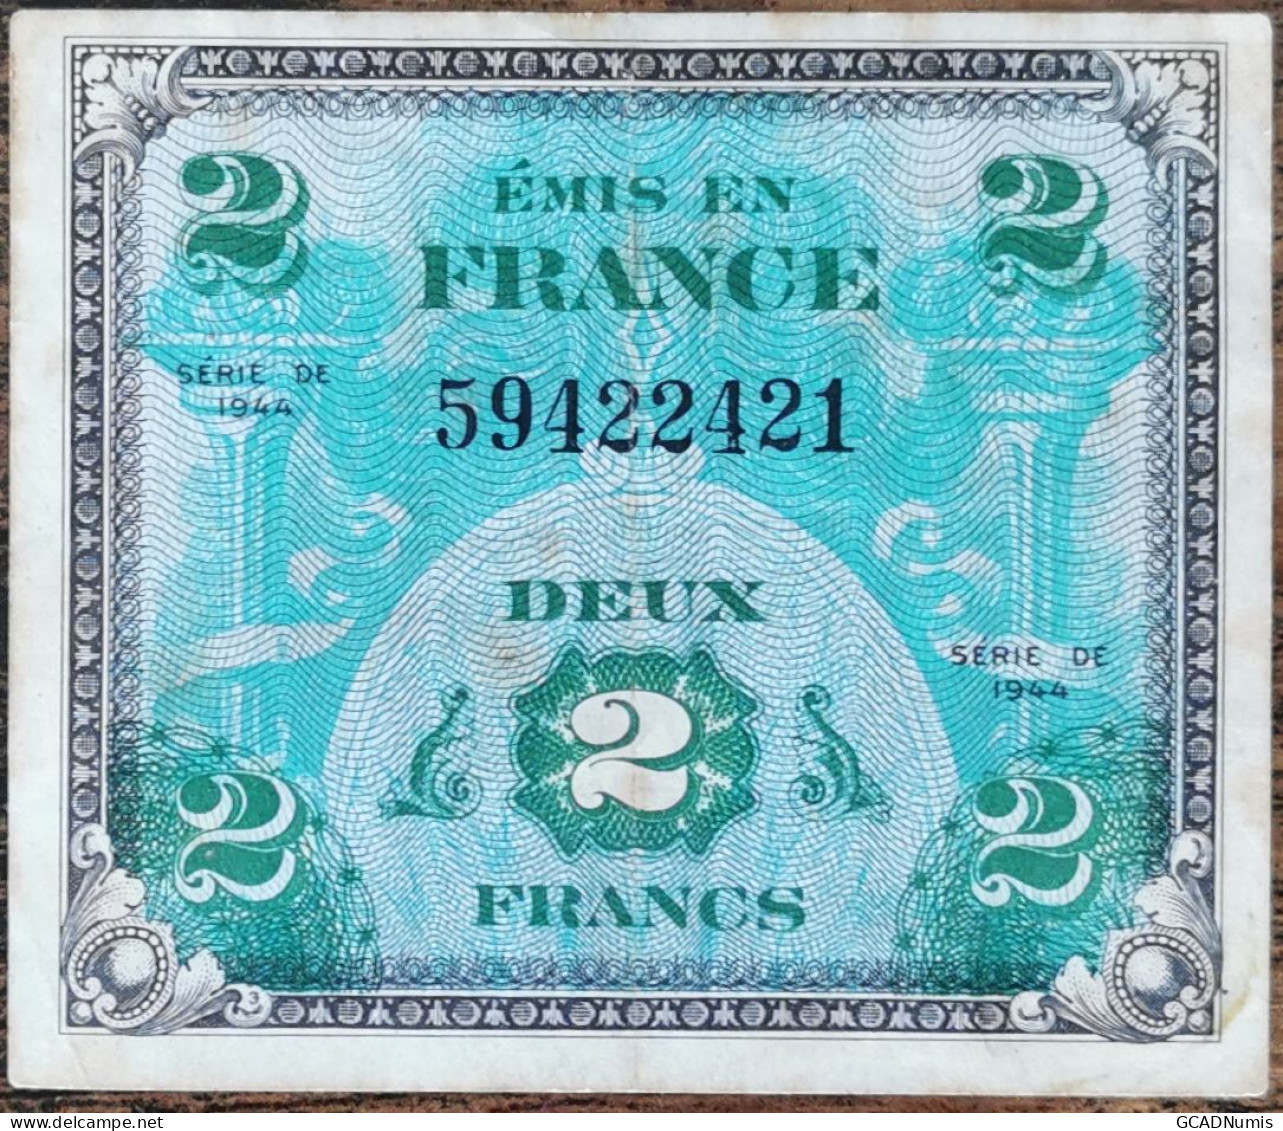 Billet 2 Francs 1944 FRANCE Préparer Par Les USA Pour La Libération 59422421 - 1944 Drapeau/France